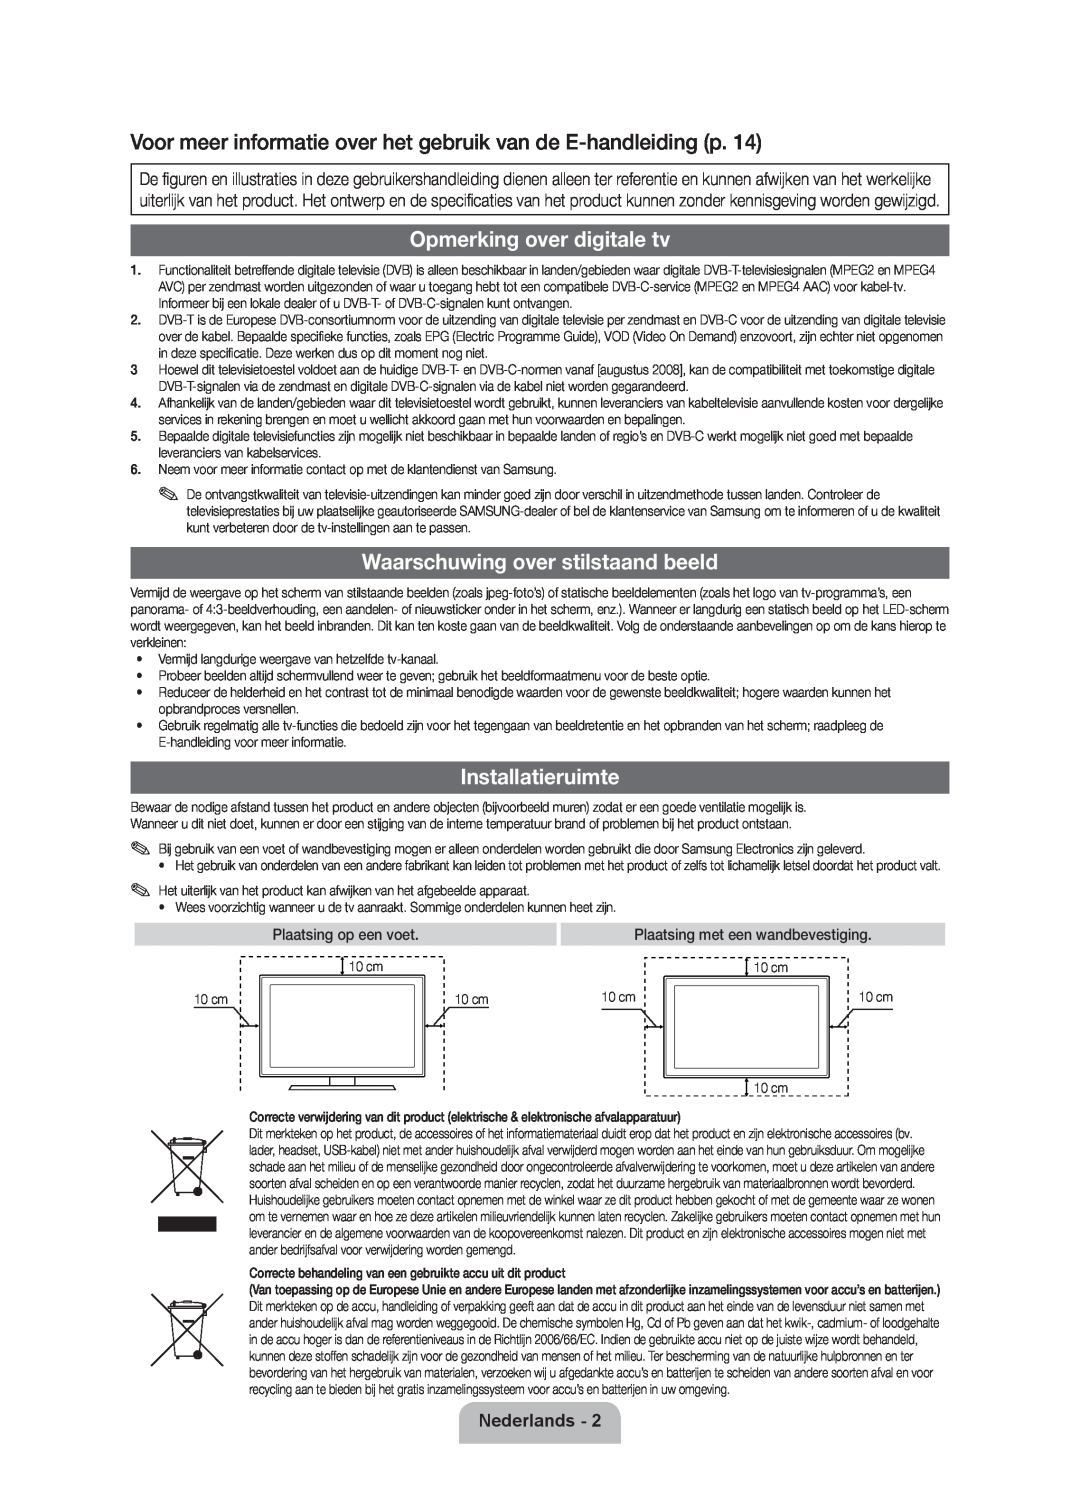 Samsung UE46D7000LSXZF manual Voor meer informatie over het gebruik van de E-handleiding p, Opmerking over digitale tv 